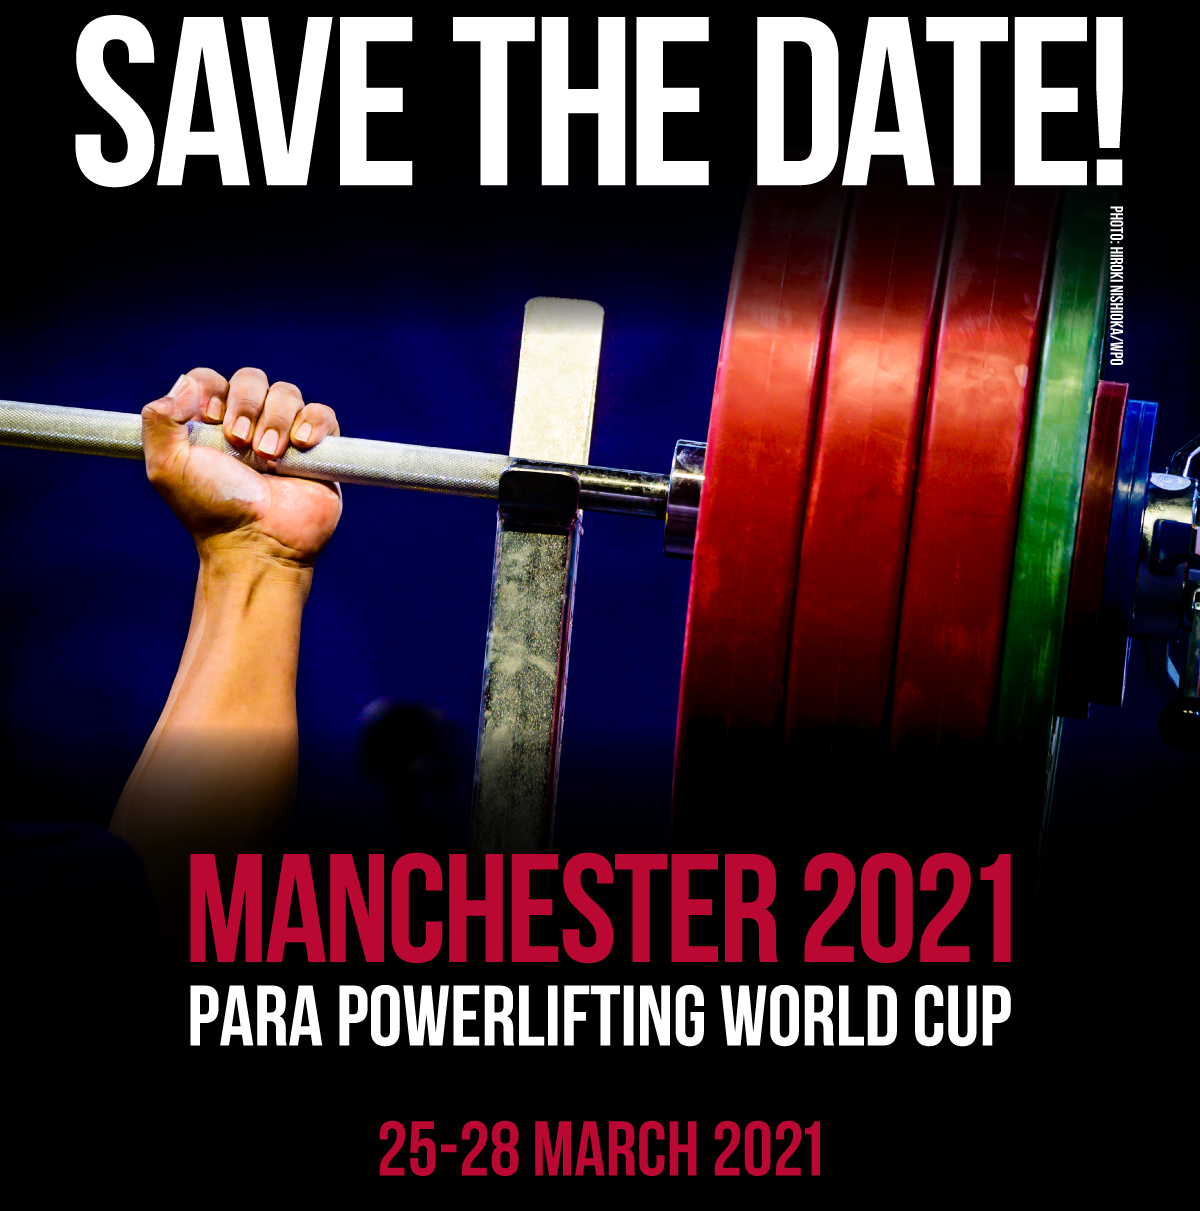 Кубок мира по пара пауэрлифтингу в Манчестере по предварительной информации состоится с 25 по 28 марта 2021 года